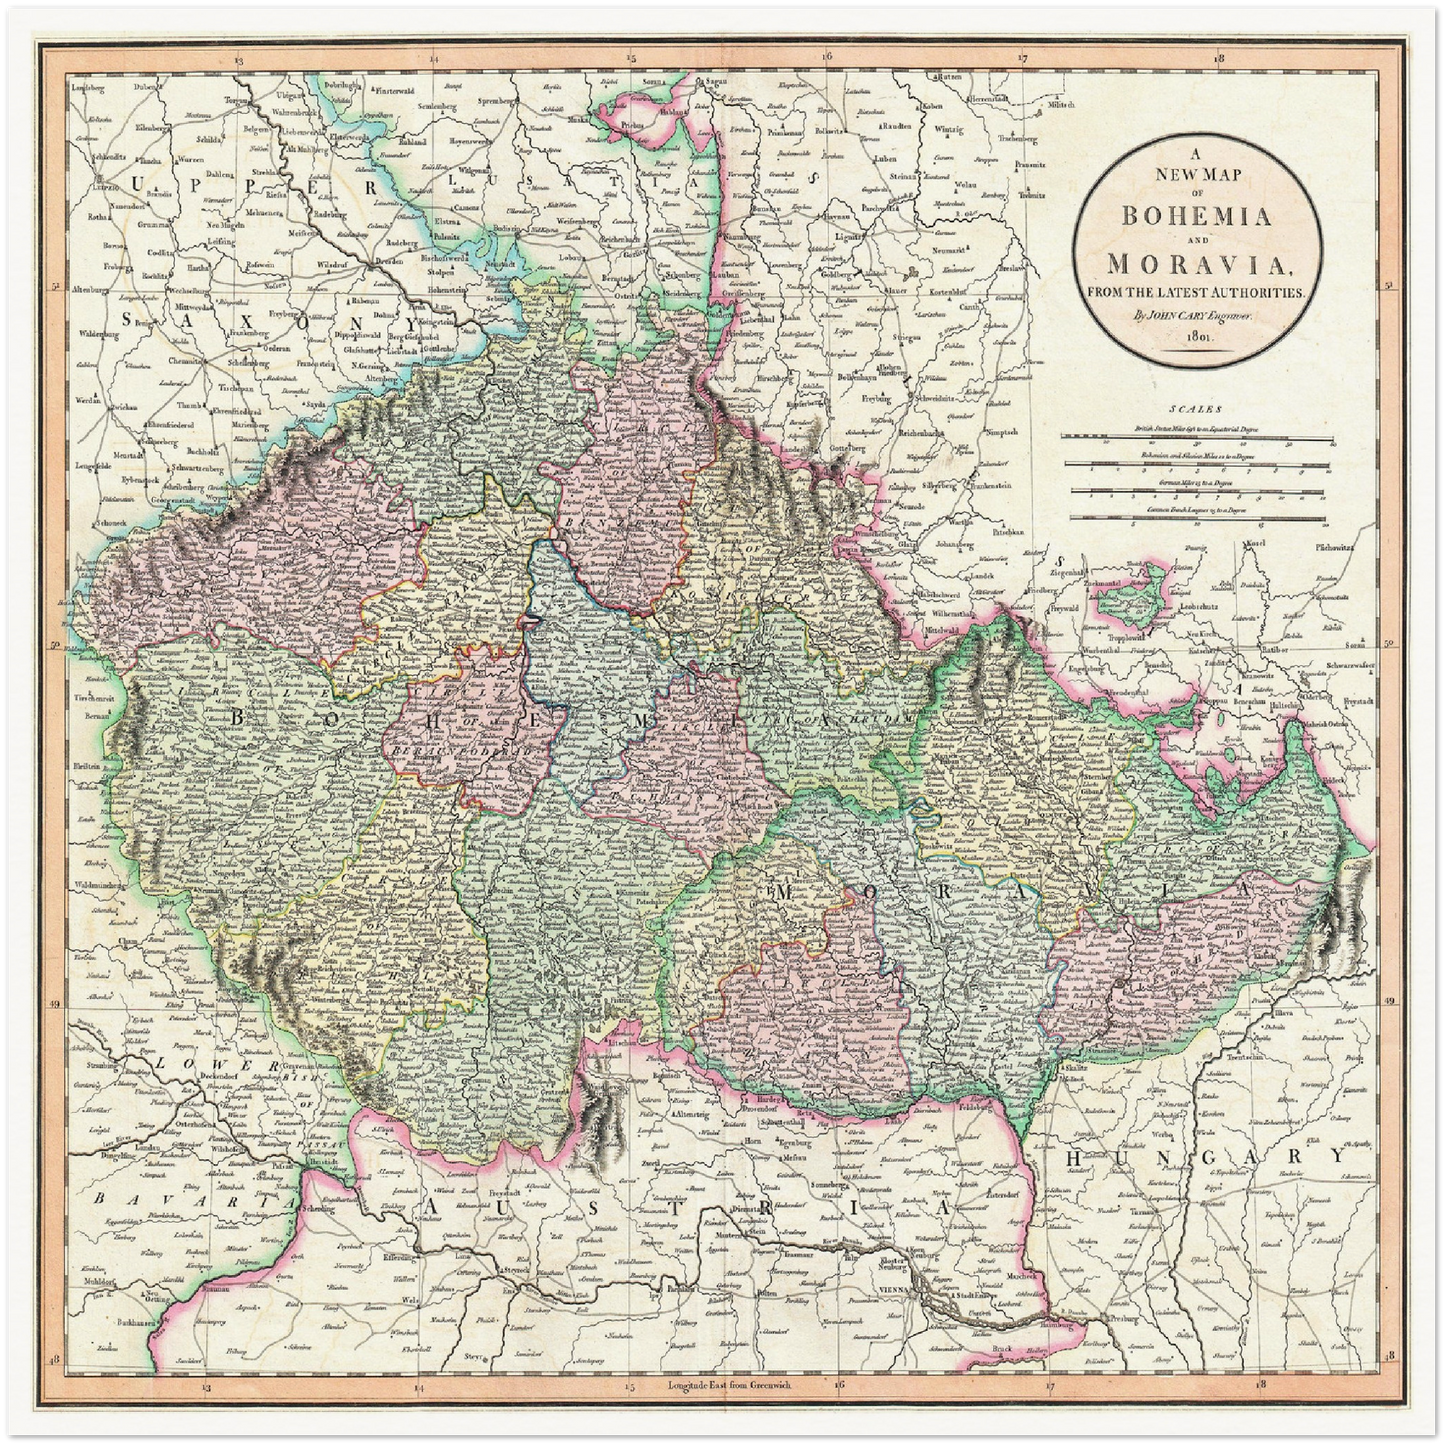 Historische Landkarte Tschechien um 1800